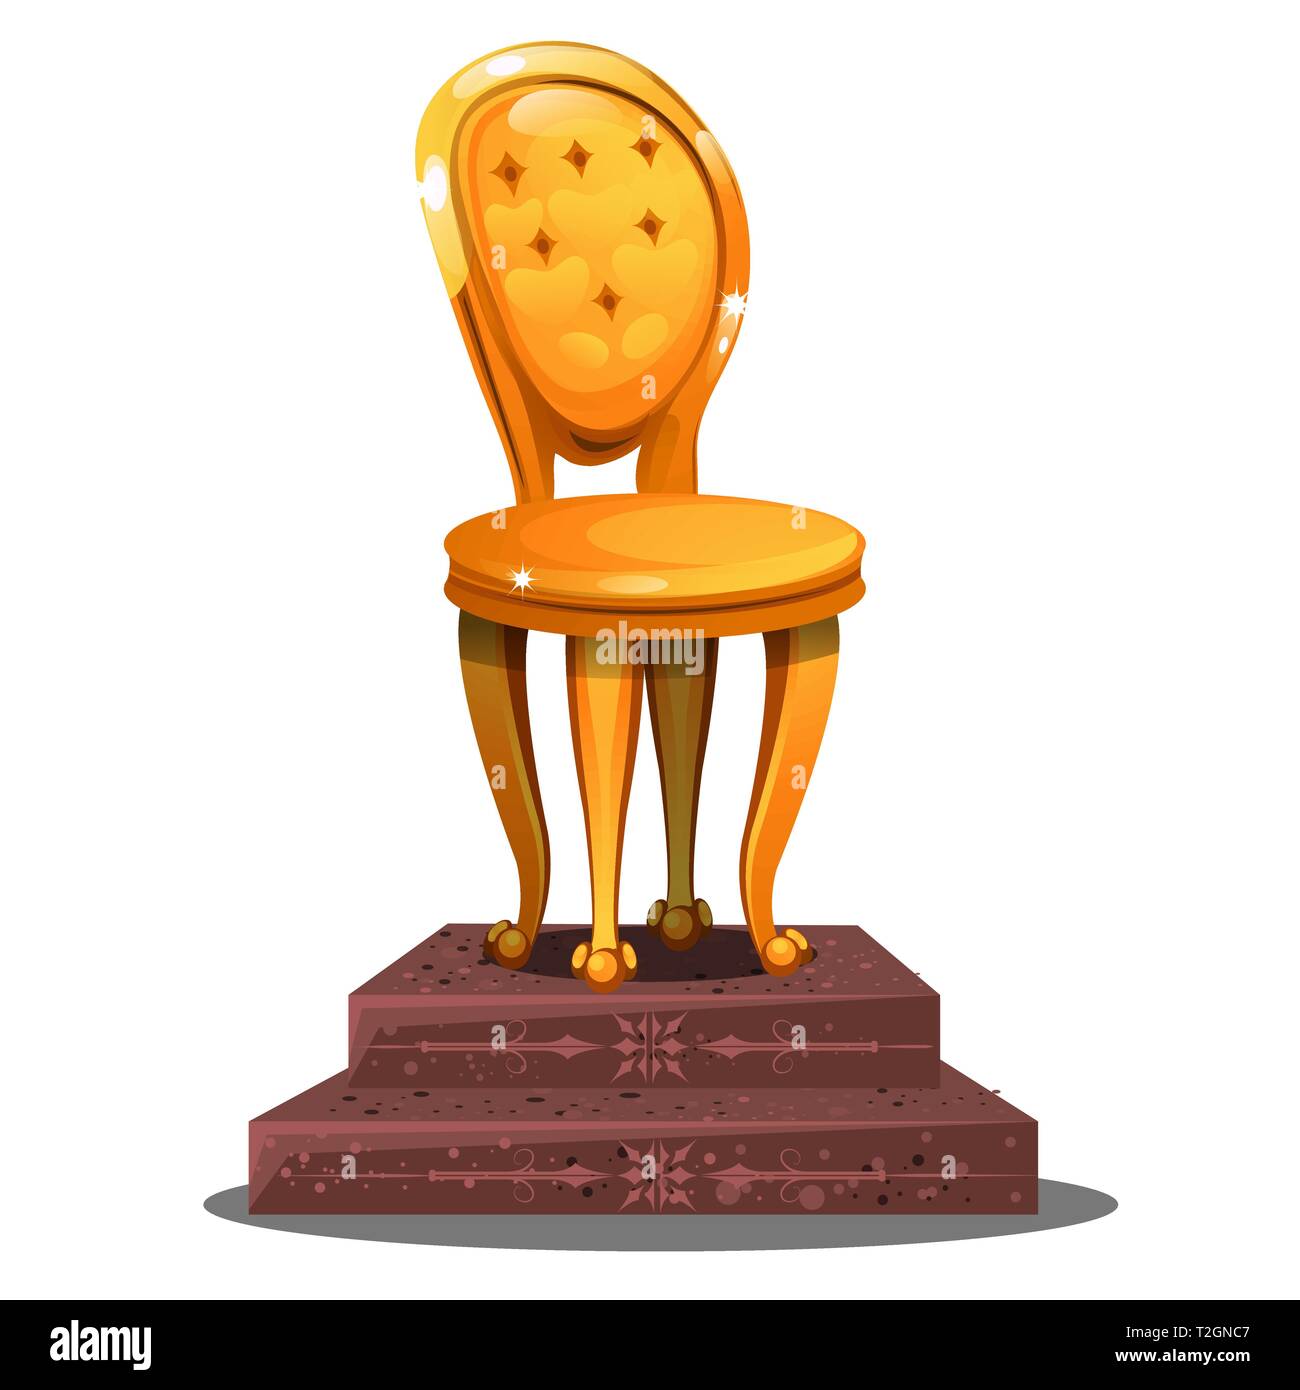 Goldene Statuette in Form einer vintage Stuhl auf einem Sockel auf weißem Hintergrund. Vektor cartoon Close-up Abbildung. Stock Vektor